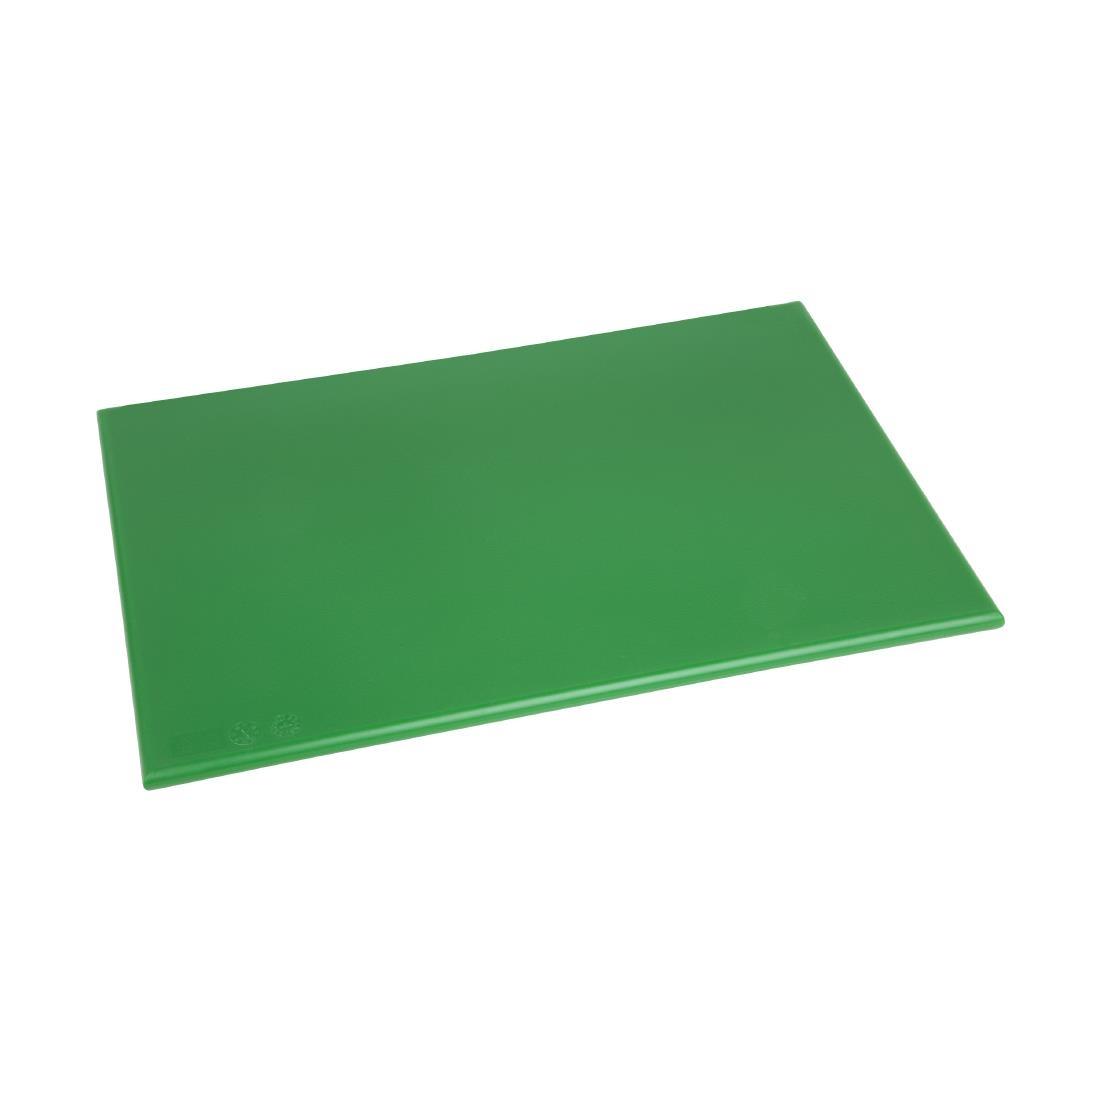 Hygiplas Anti Microbial High Density Green Chopping Board - F158  - 1